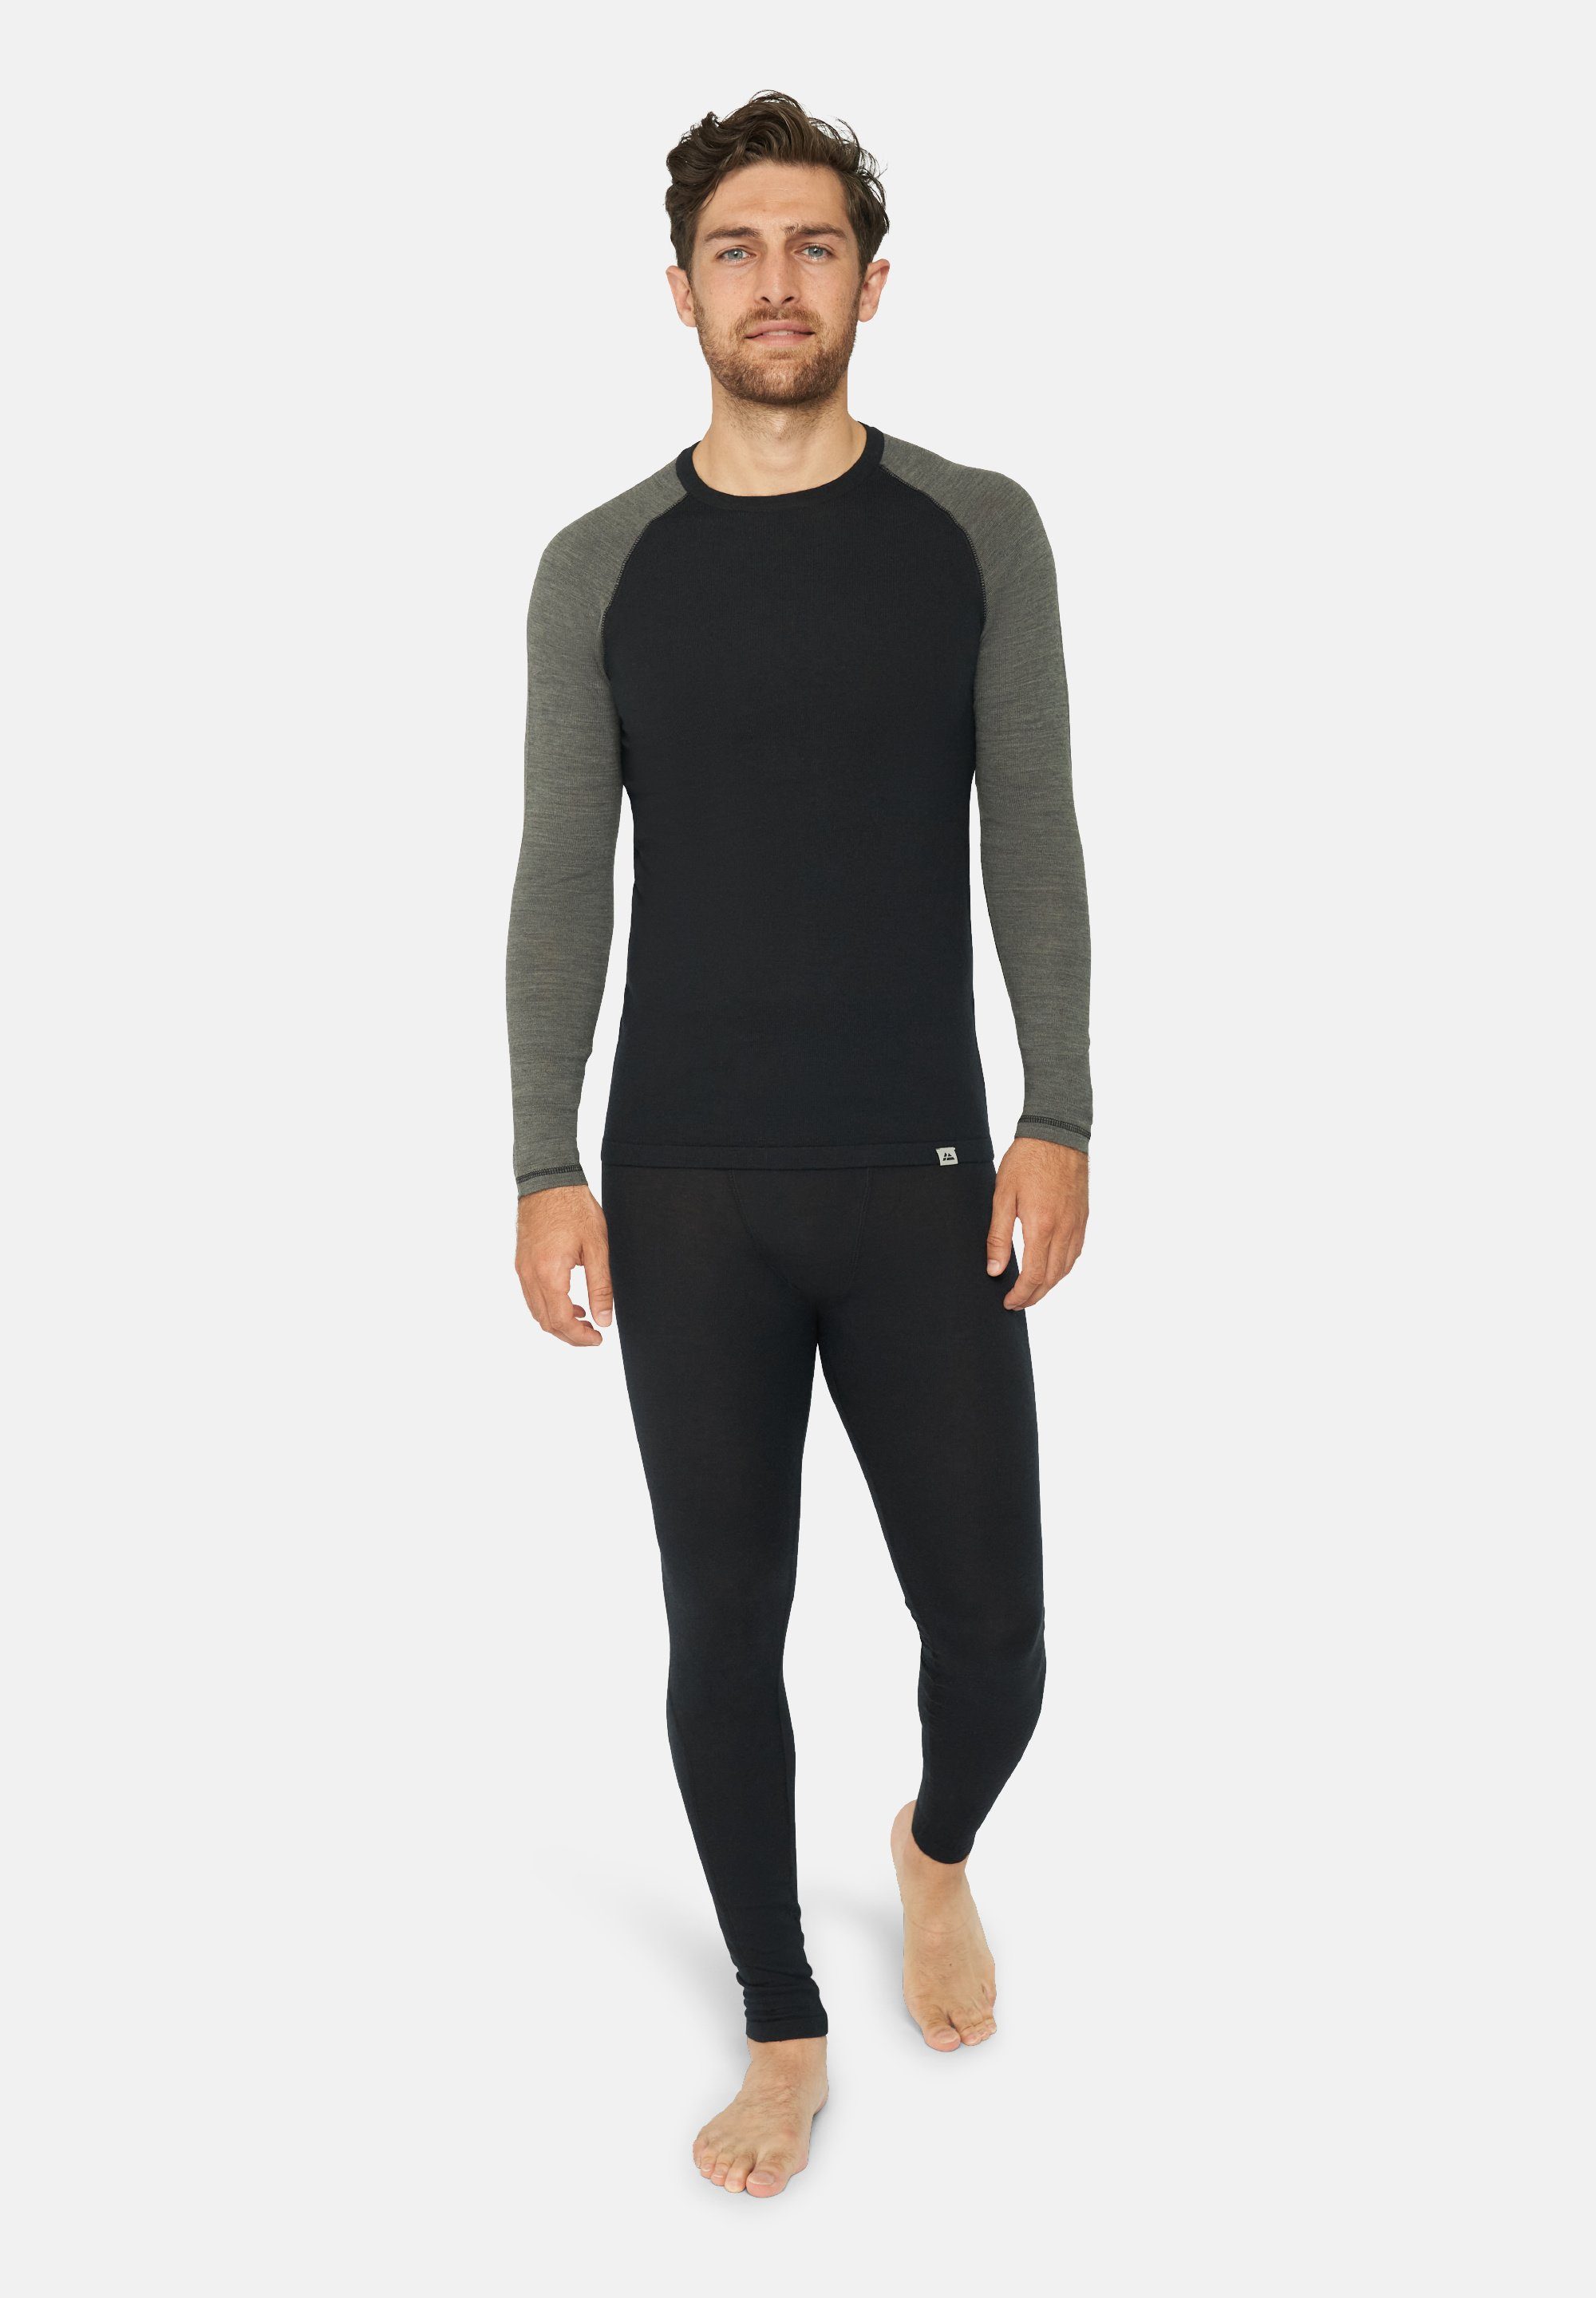 Thermounterhemd & Herren Merino grey Temperaturregulierend Shirt black/dark für Thermo-Unterwäsche DANISH Set Hose, ENDURANCE Langarm